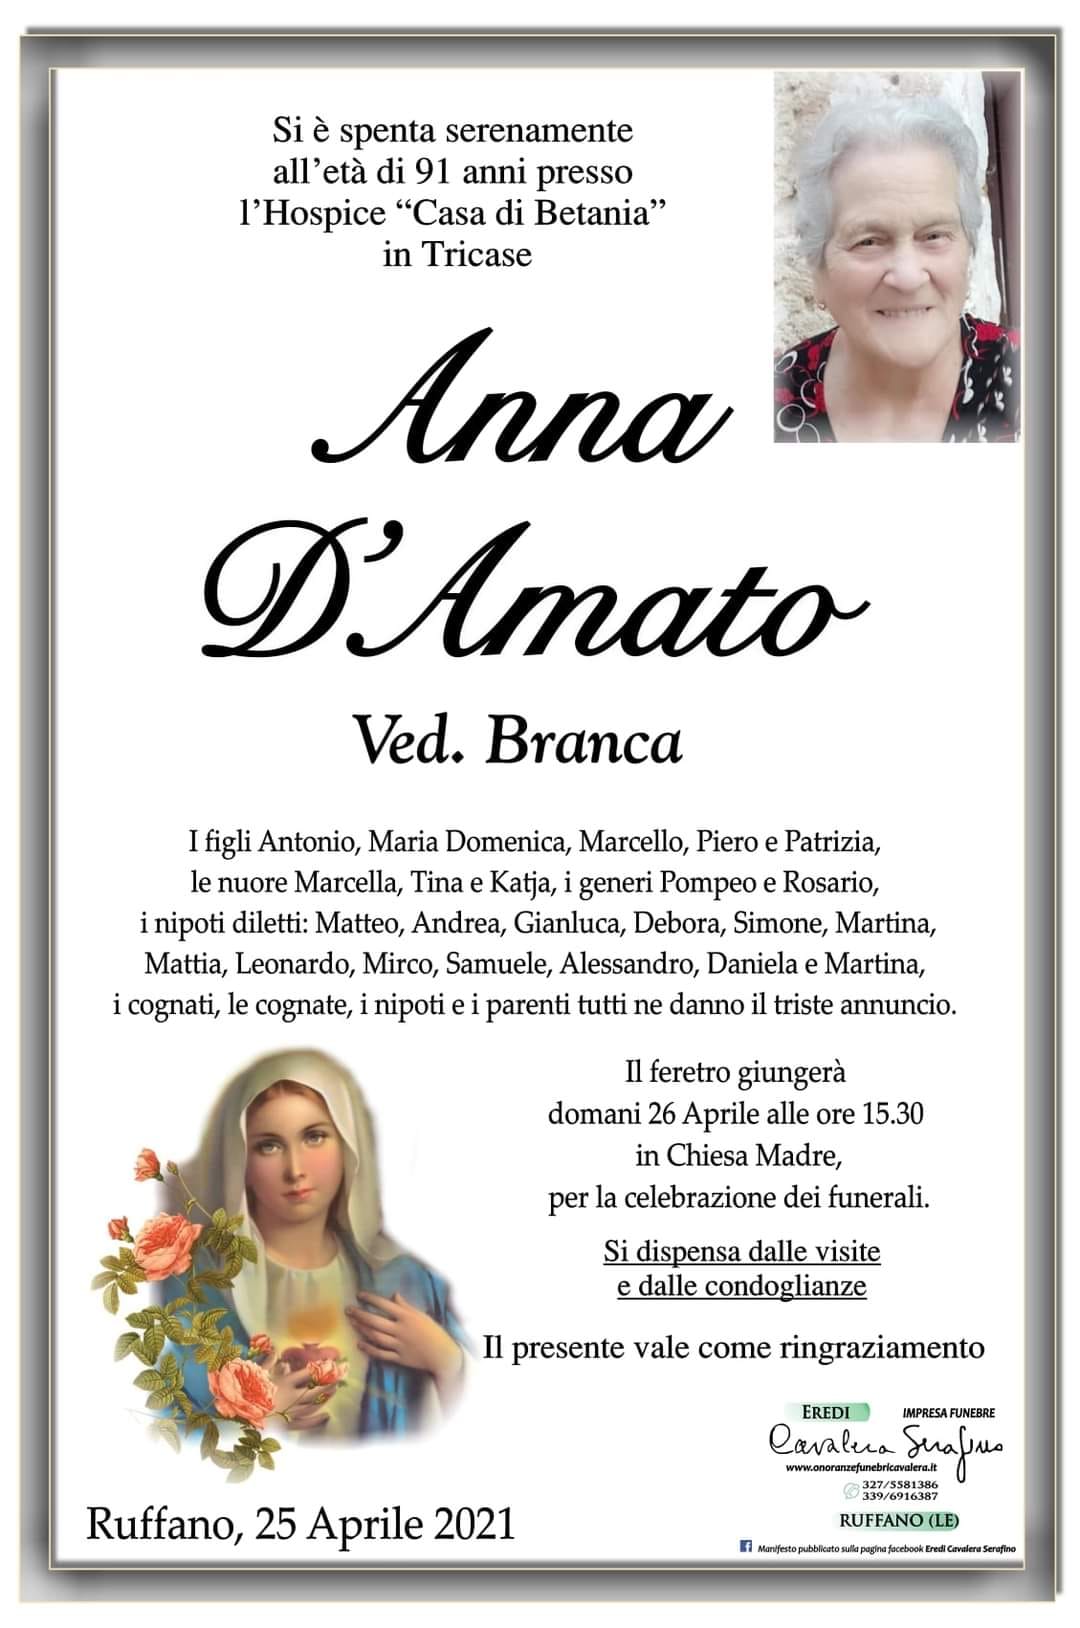 Anna D'Amato